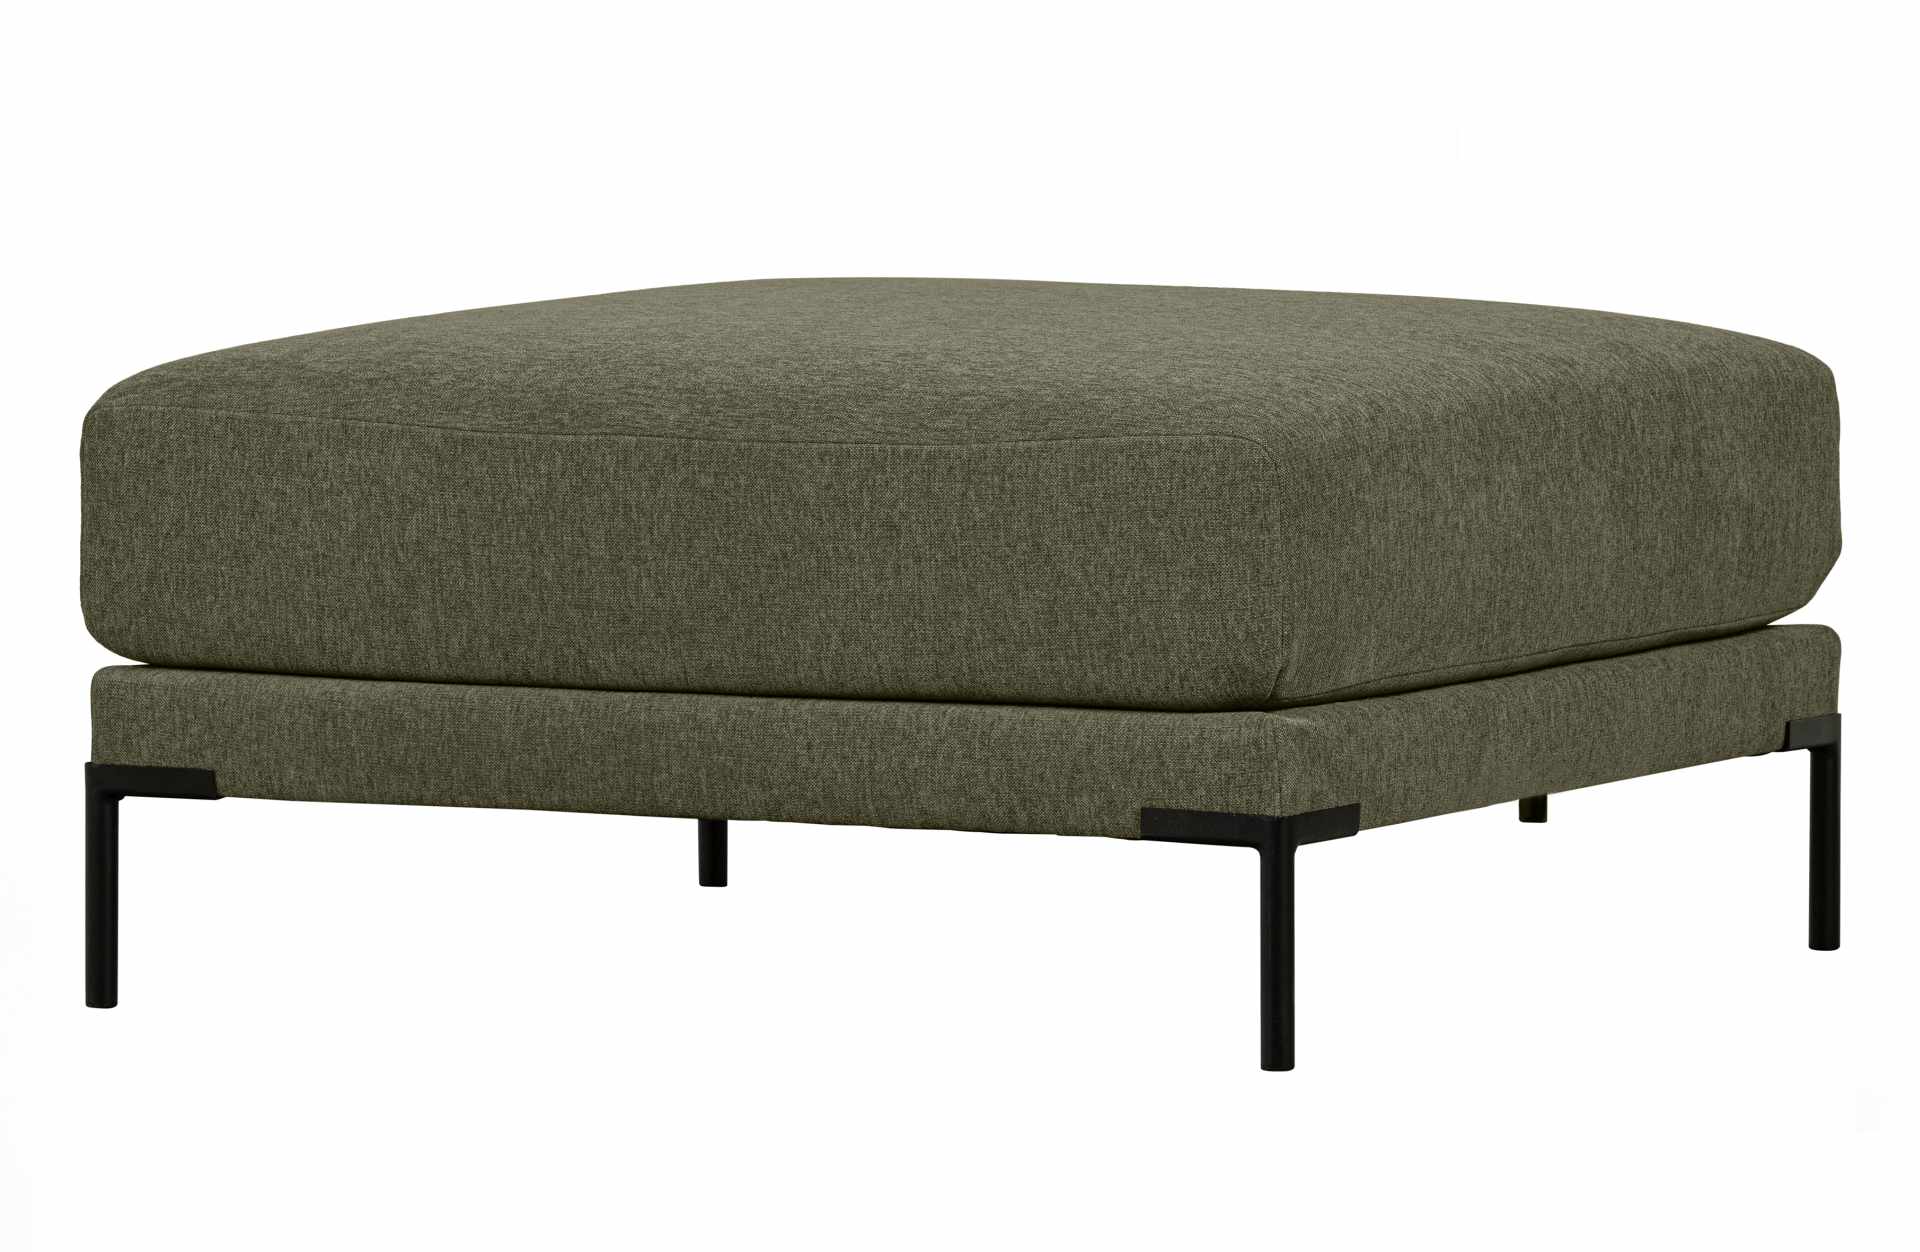 Das Modulsofa Couple Lounge überzeugt mit seinem modernen Design. Das Lounge Element mit der Ausführung 100 cm wurde aus Melange Stoff gefertigt, welcher einen einen grünen Farbton besitzen. Das Gestell ist aus Metall und hat eine schwarze Farbe. Das Elem